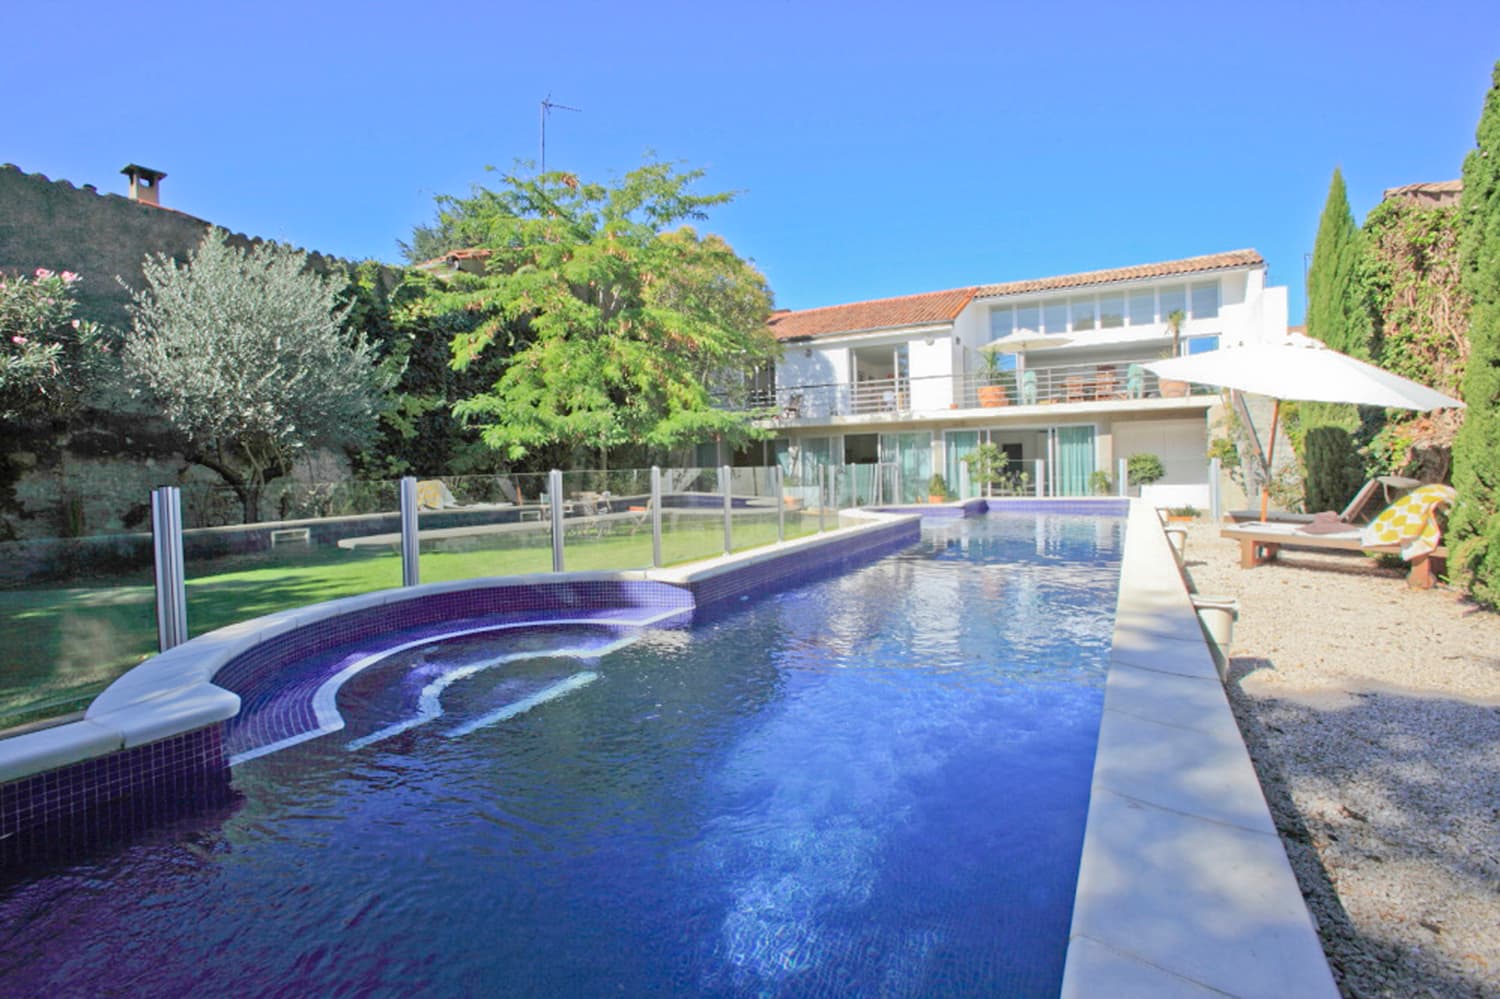 Maison de vacances dans le Languedoc avec piscine privée